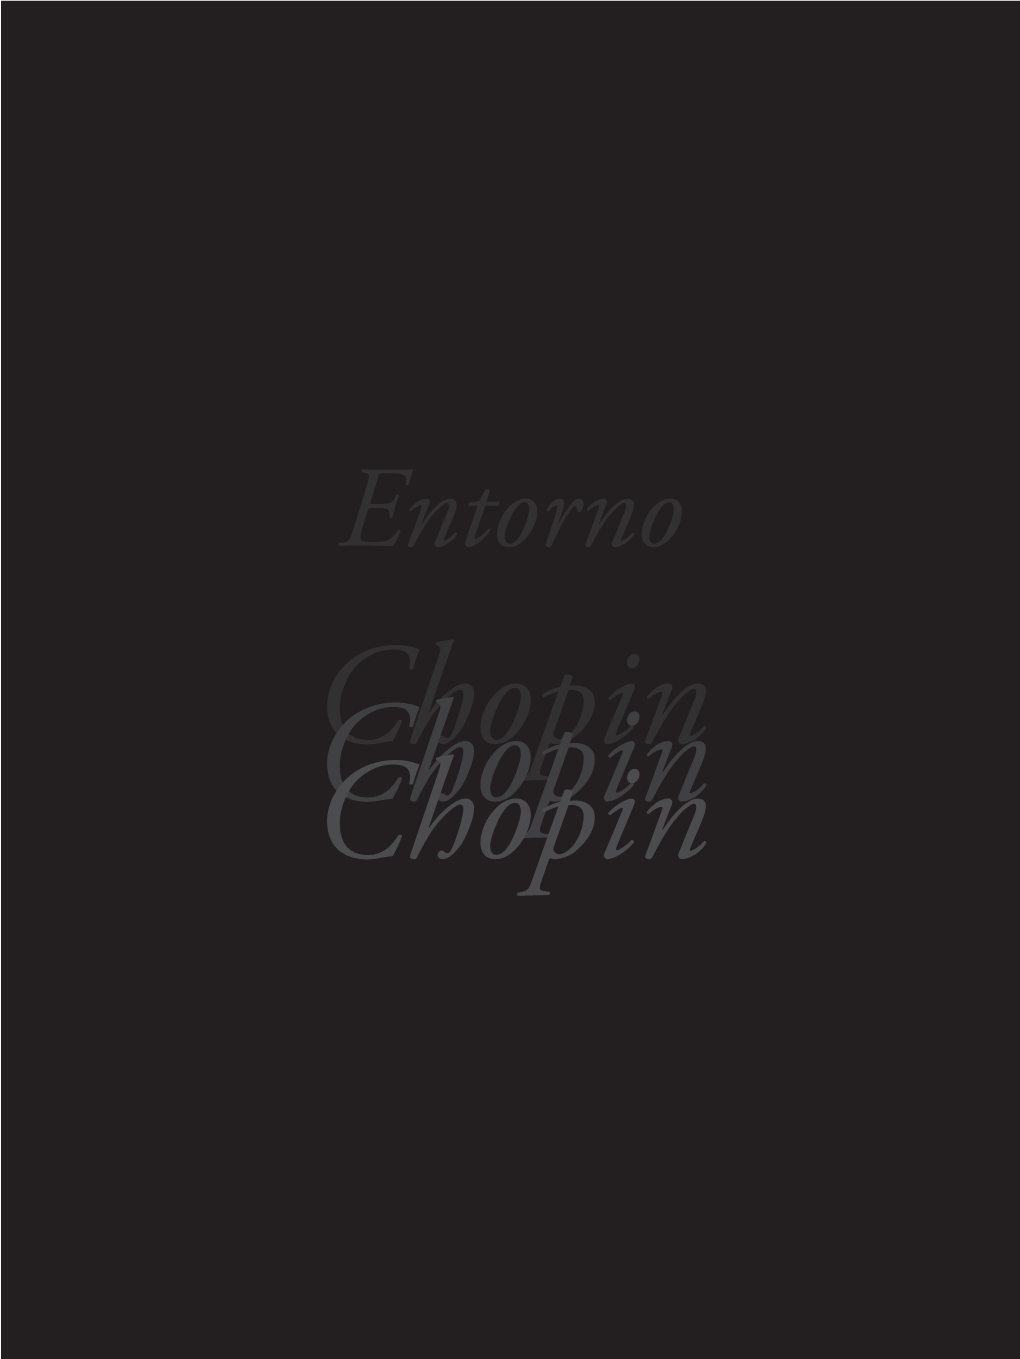 Entorno Chopin Chopin PROMOTOR Y PATROCINADOR DIRECTORA Ayuntamiento De Cuenca Joanna Karasek